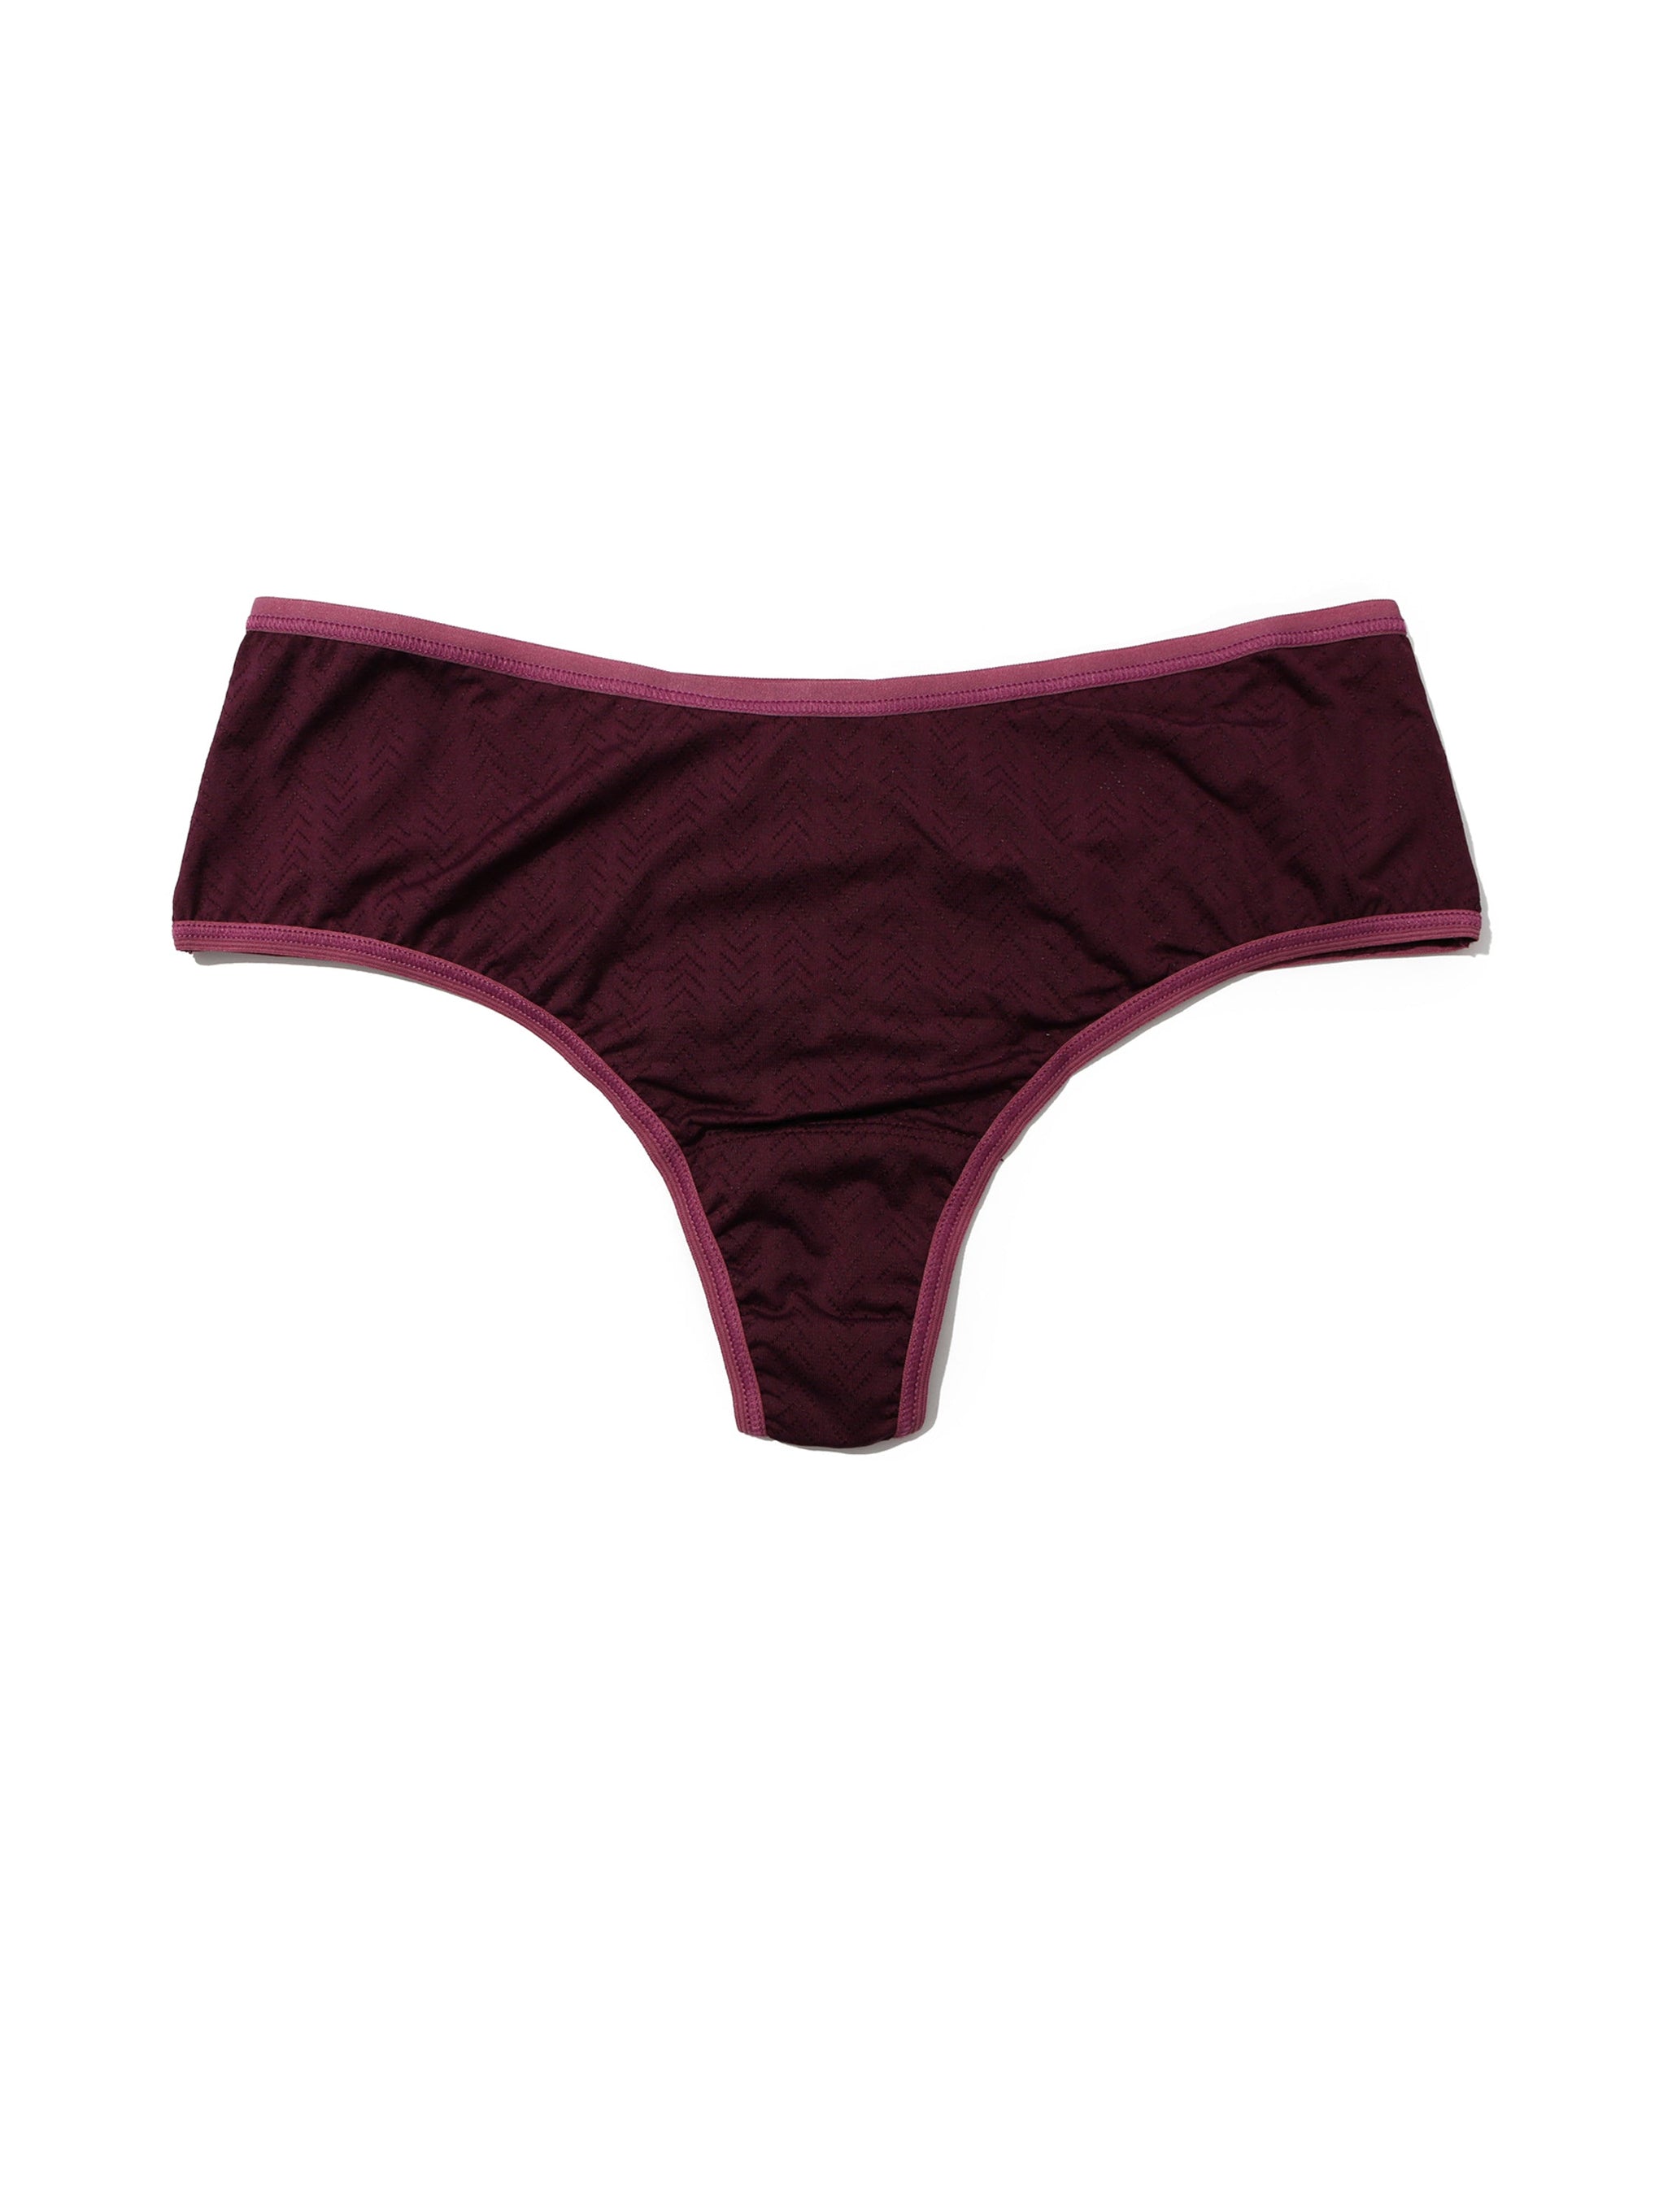 Cherry Berries Women's G-String Thongs Soft Underpants Panties T-back  Underwear